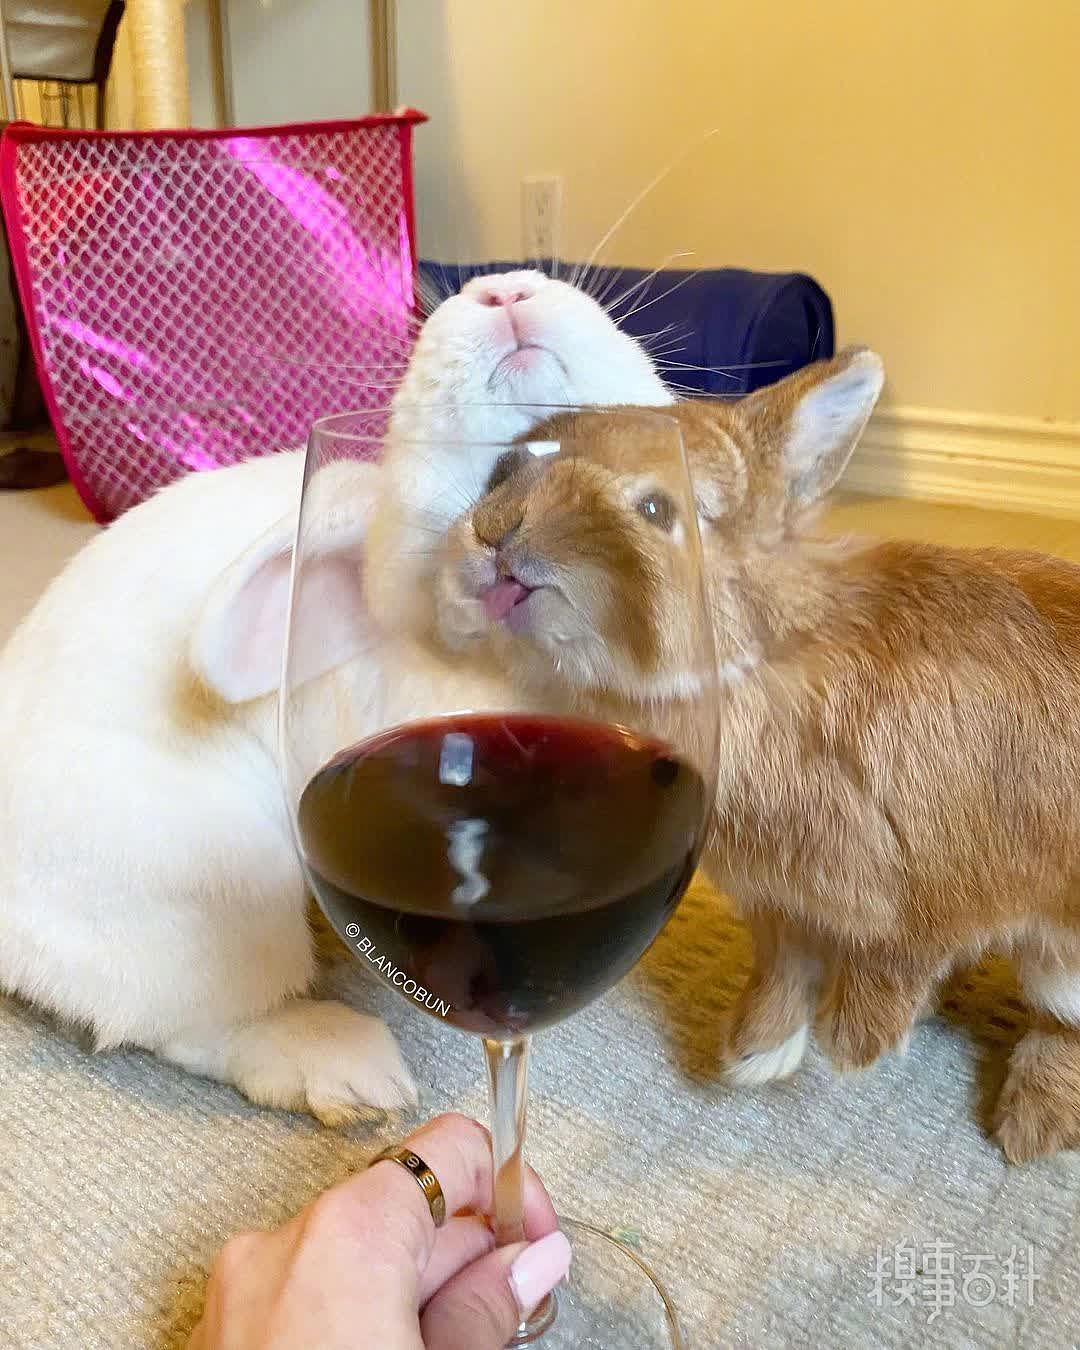 之前爱喝酒的兔兔BL